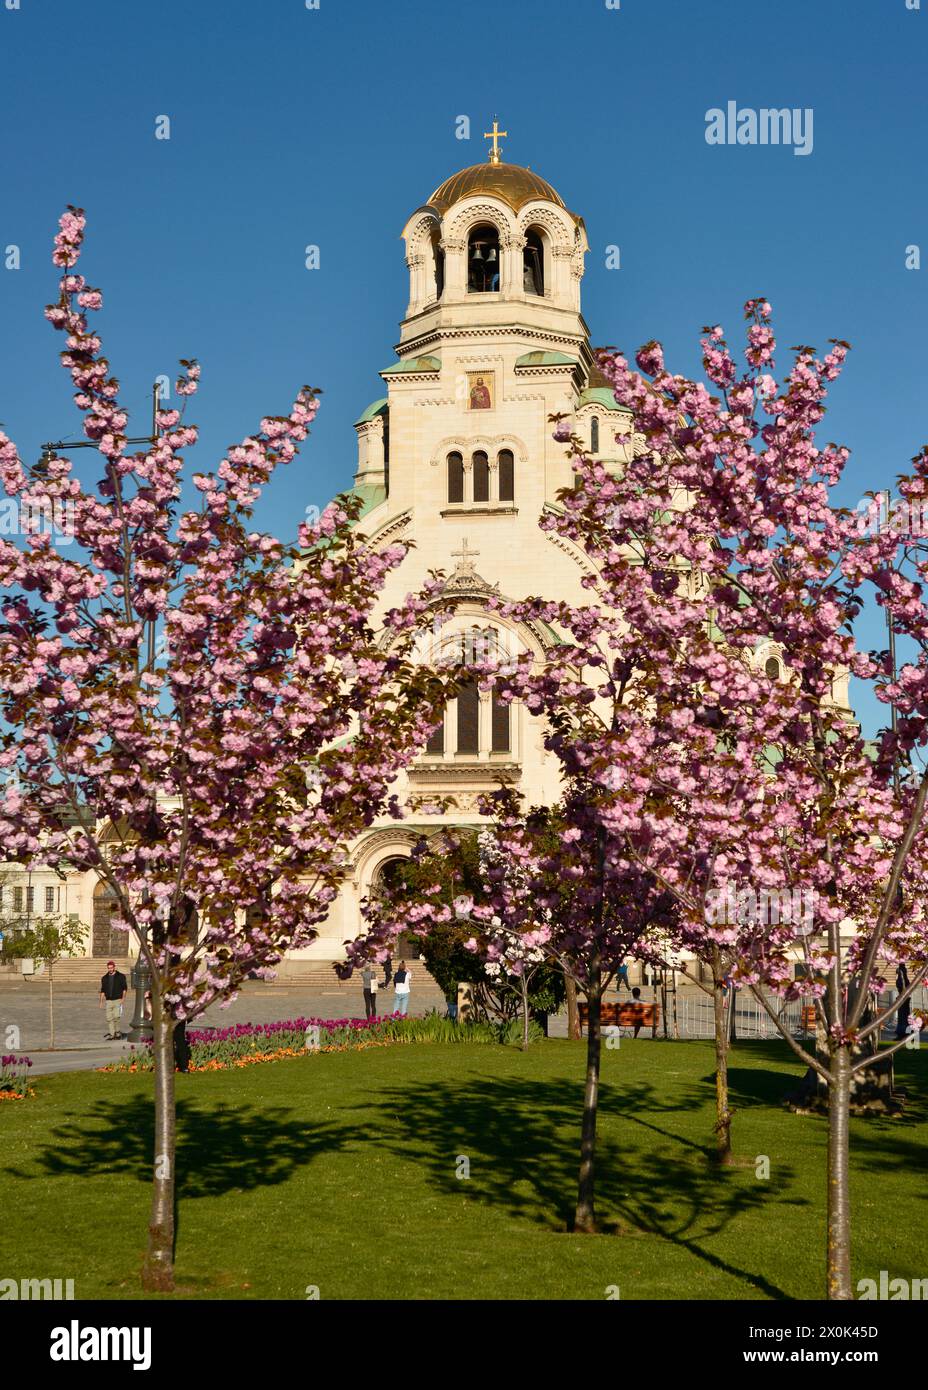 Prog Cathédrale orthodoxe Alexander Nevsky vue à travers les cerisiers en fleurs de sakura à Sofia Bulgarie. Europe de l'est, Balkans, UE Banque D'Images